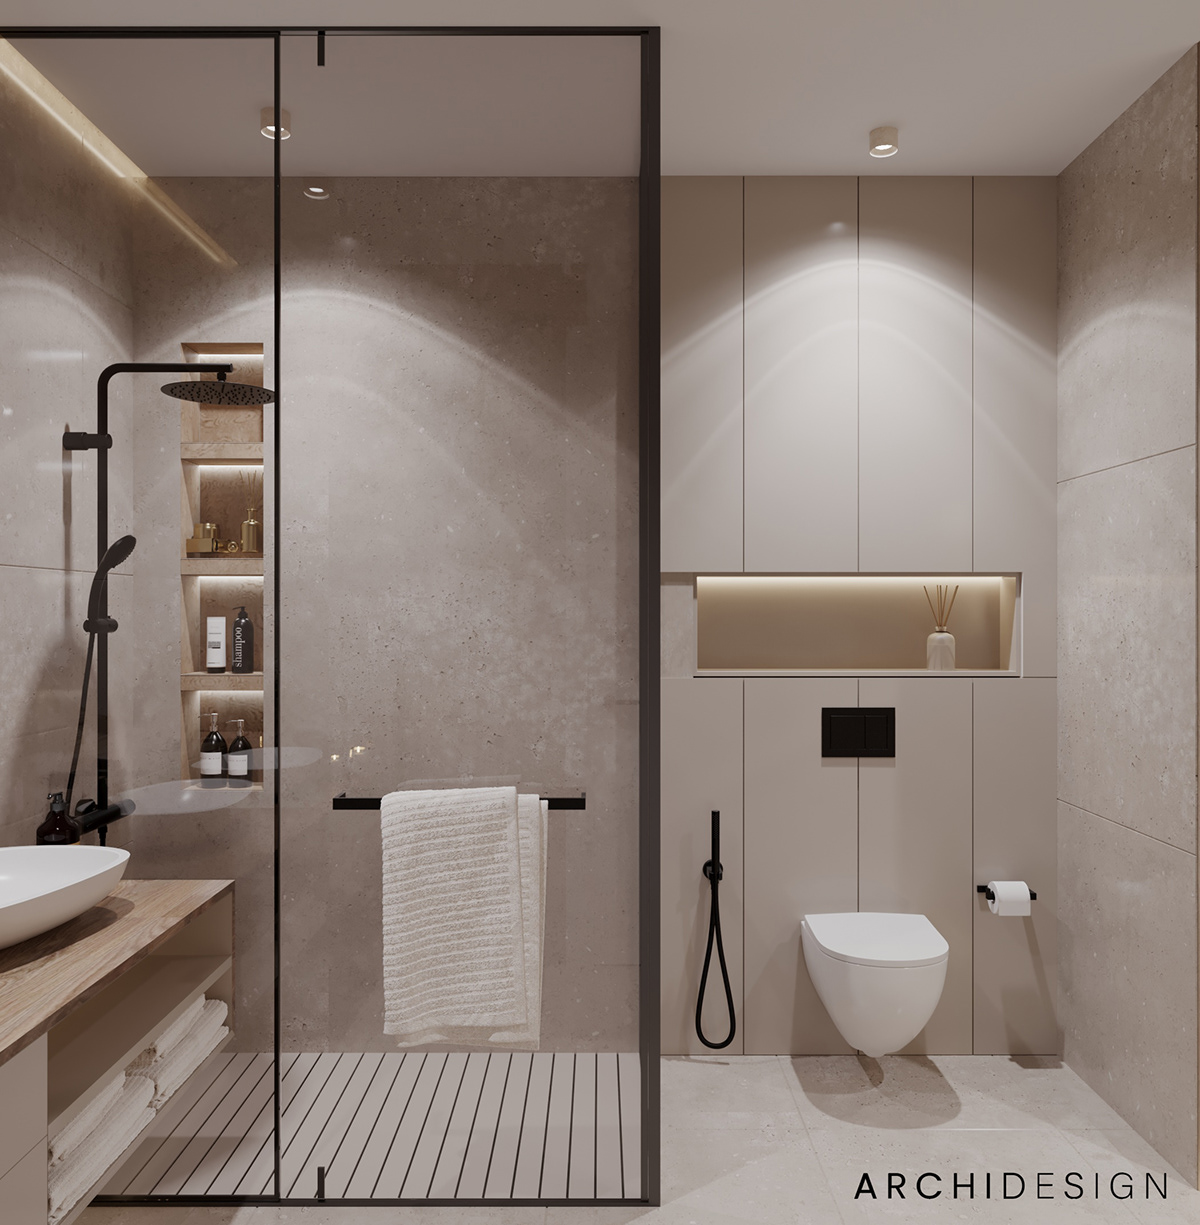 bathroom bathroom design bath bathroomdesign bathroom interior bathrooms Master Bathroom master bedroom bedroom bedroom design